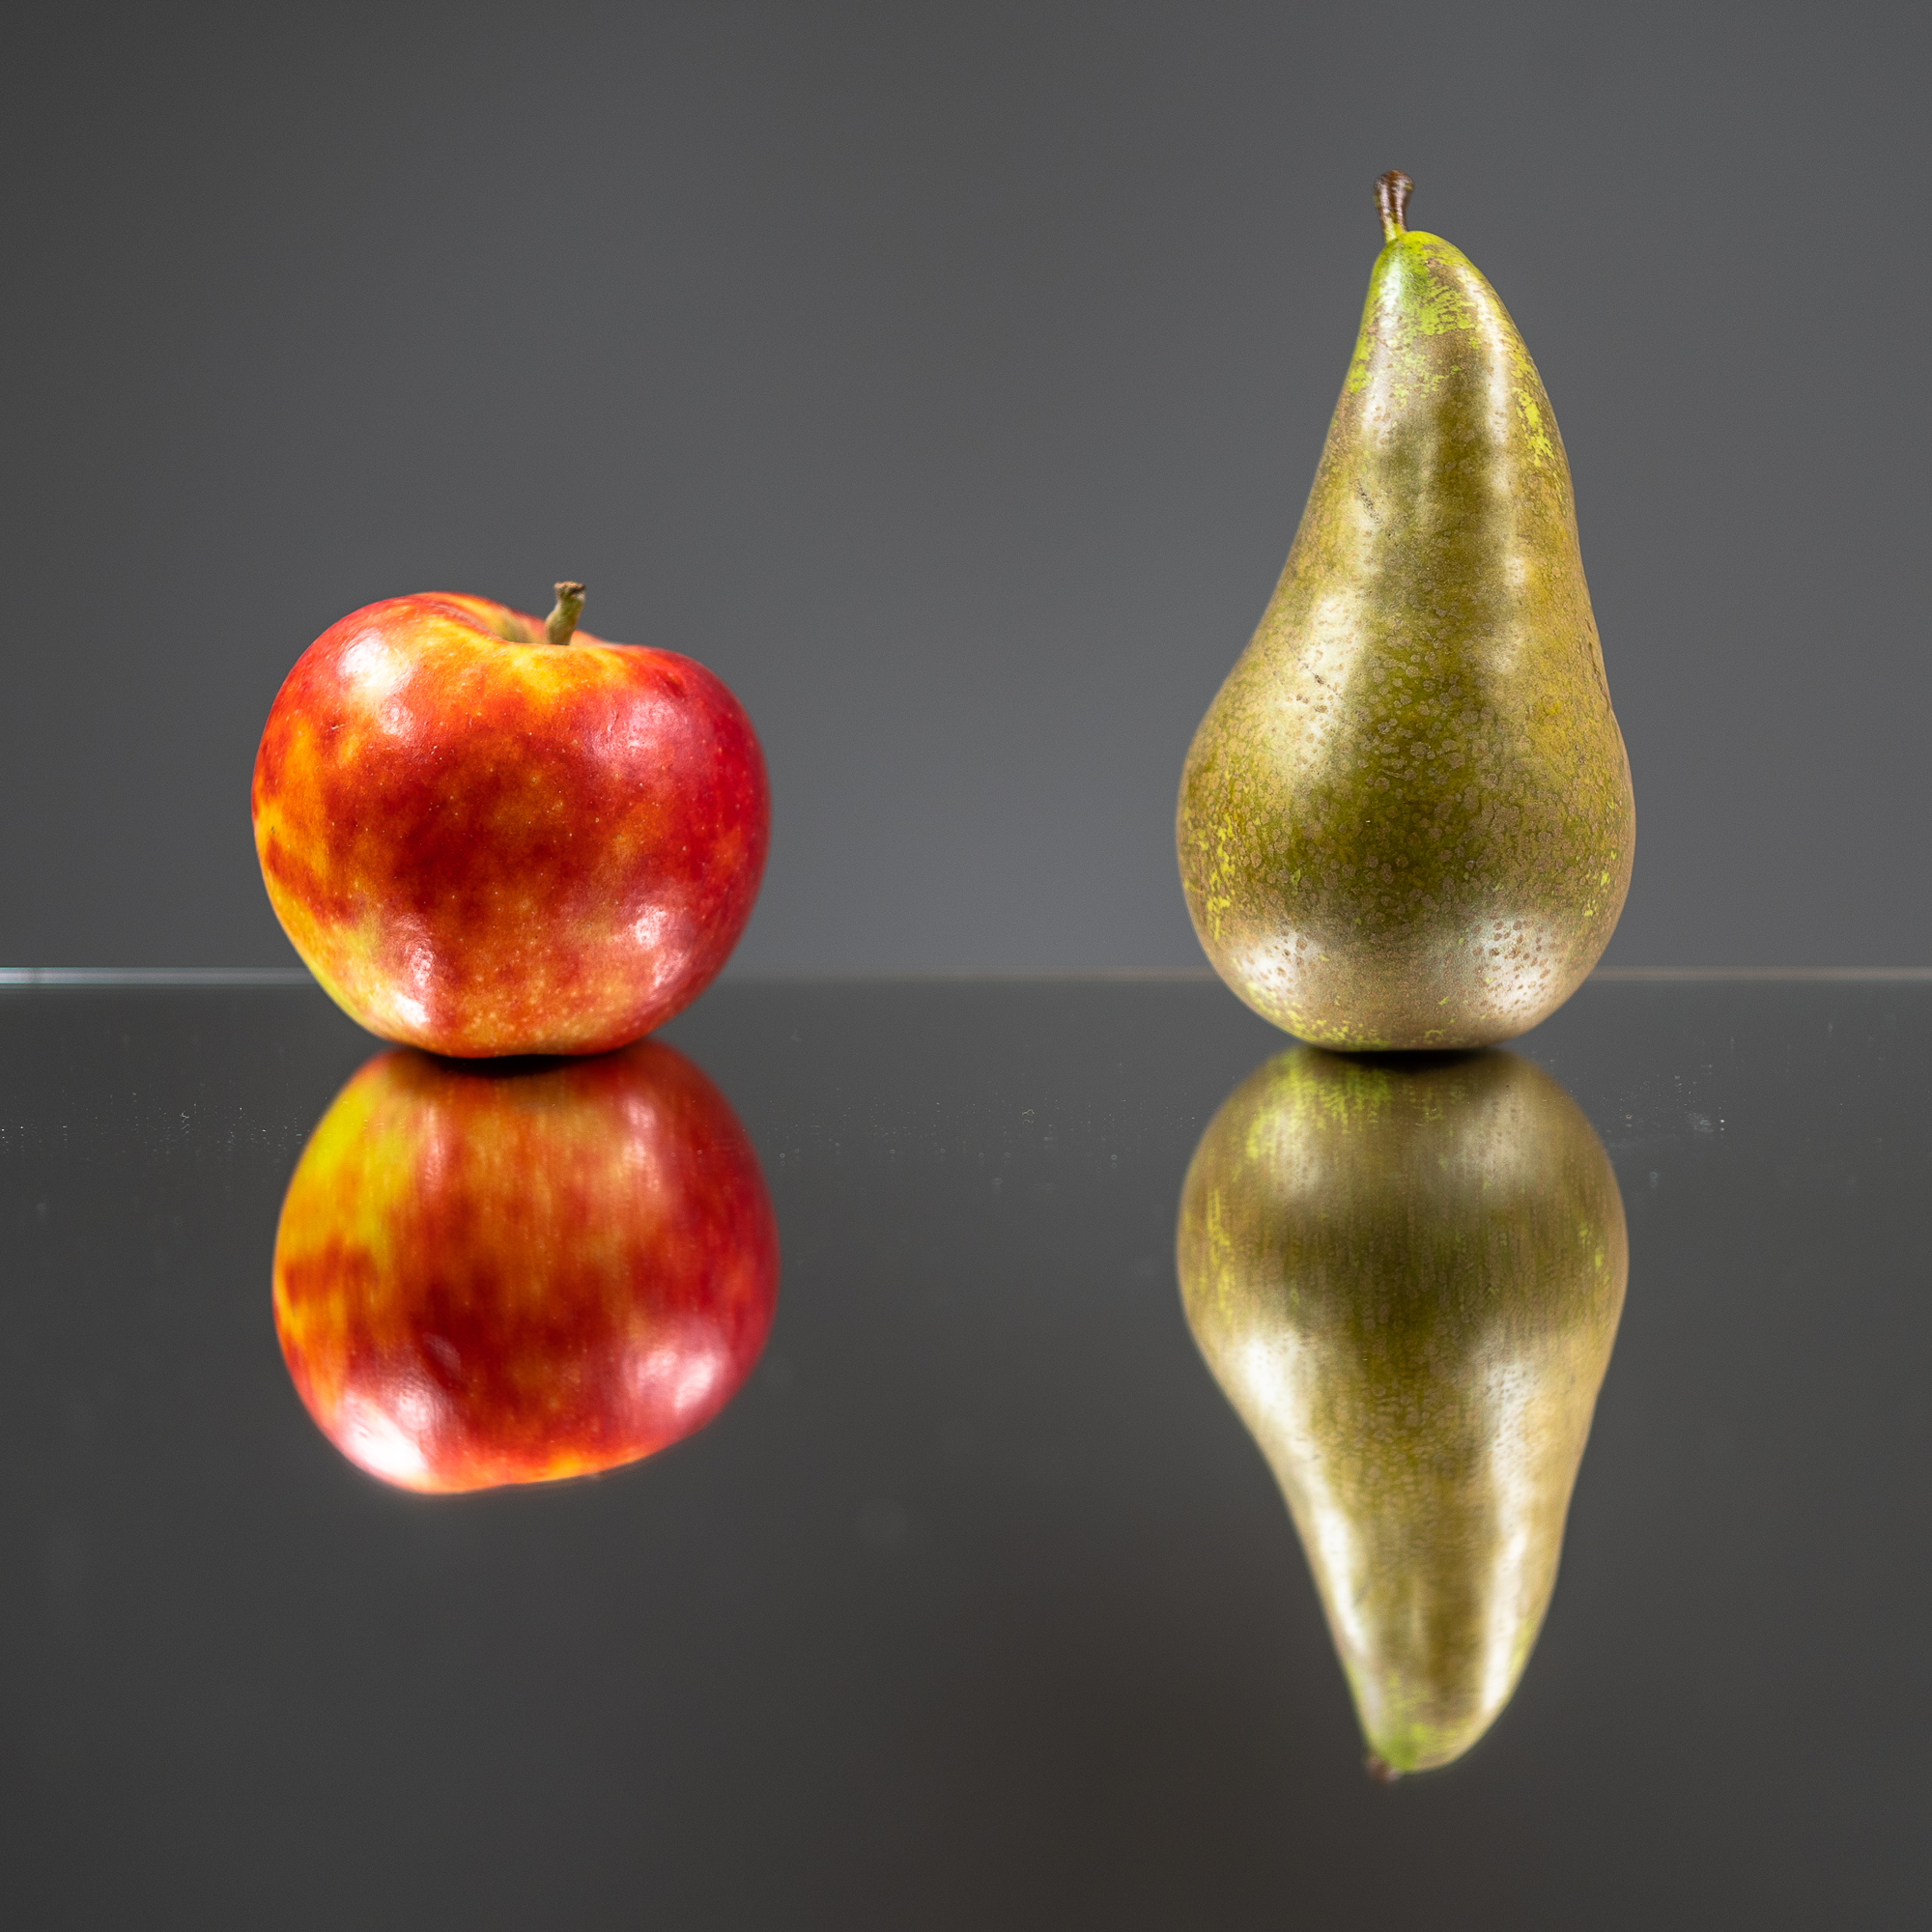 Ein Apfel und eine Birne liegen auf einer glänzenden Oberfläche und spiegeln sich darin.